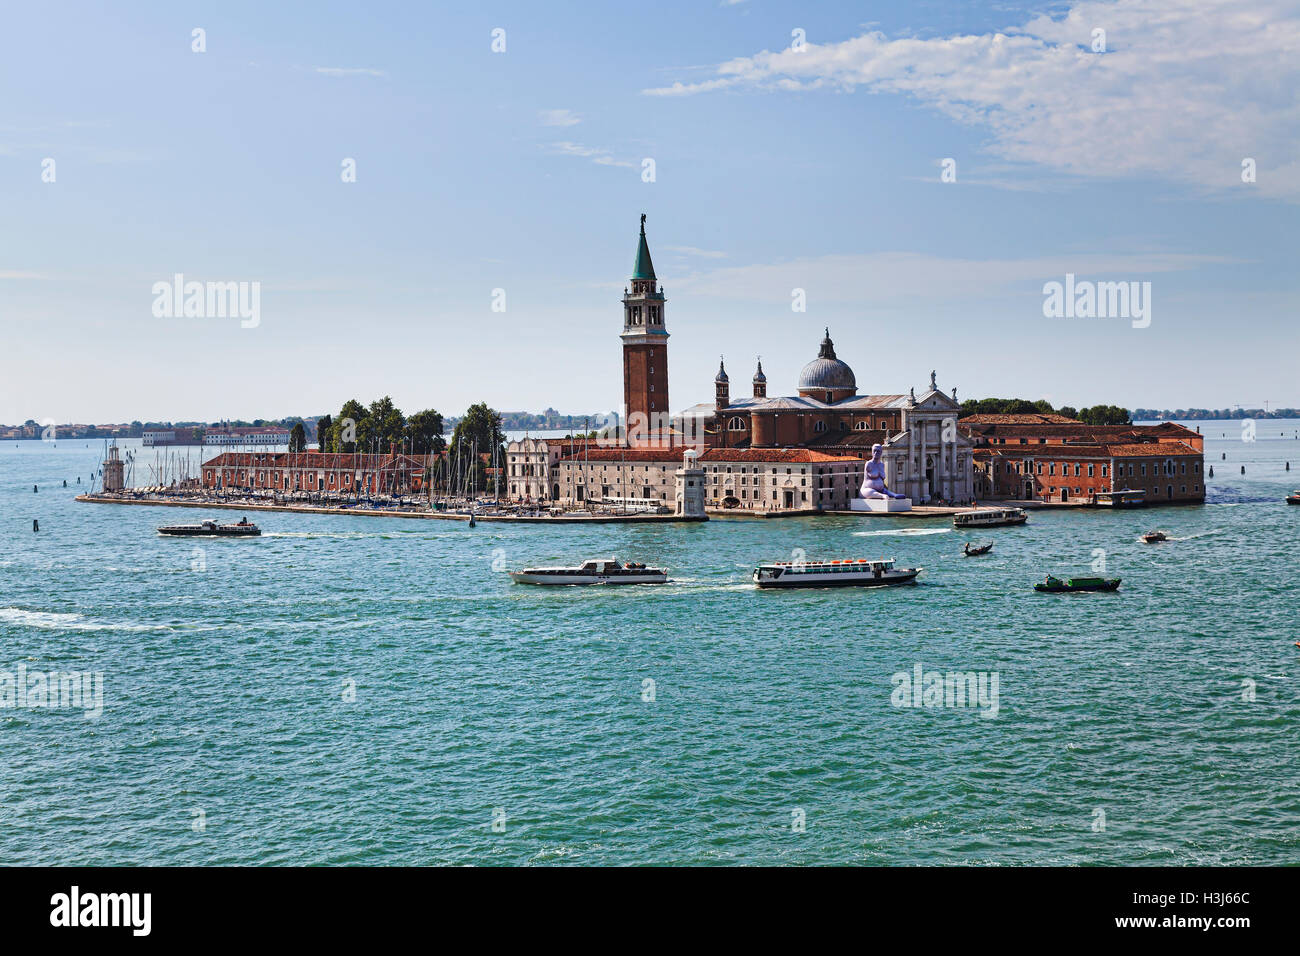 San GIorgio Maggiore Kathedrale Kirche und Kloster auf isolierte Insel von Venedig Republik erhöhten Blick über Kanal auf sonnigen da Stockfoto